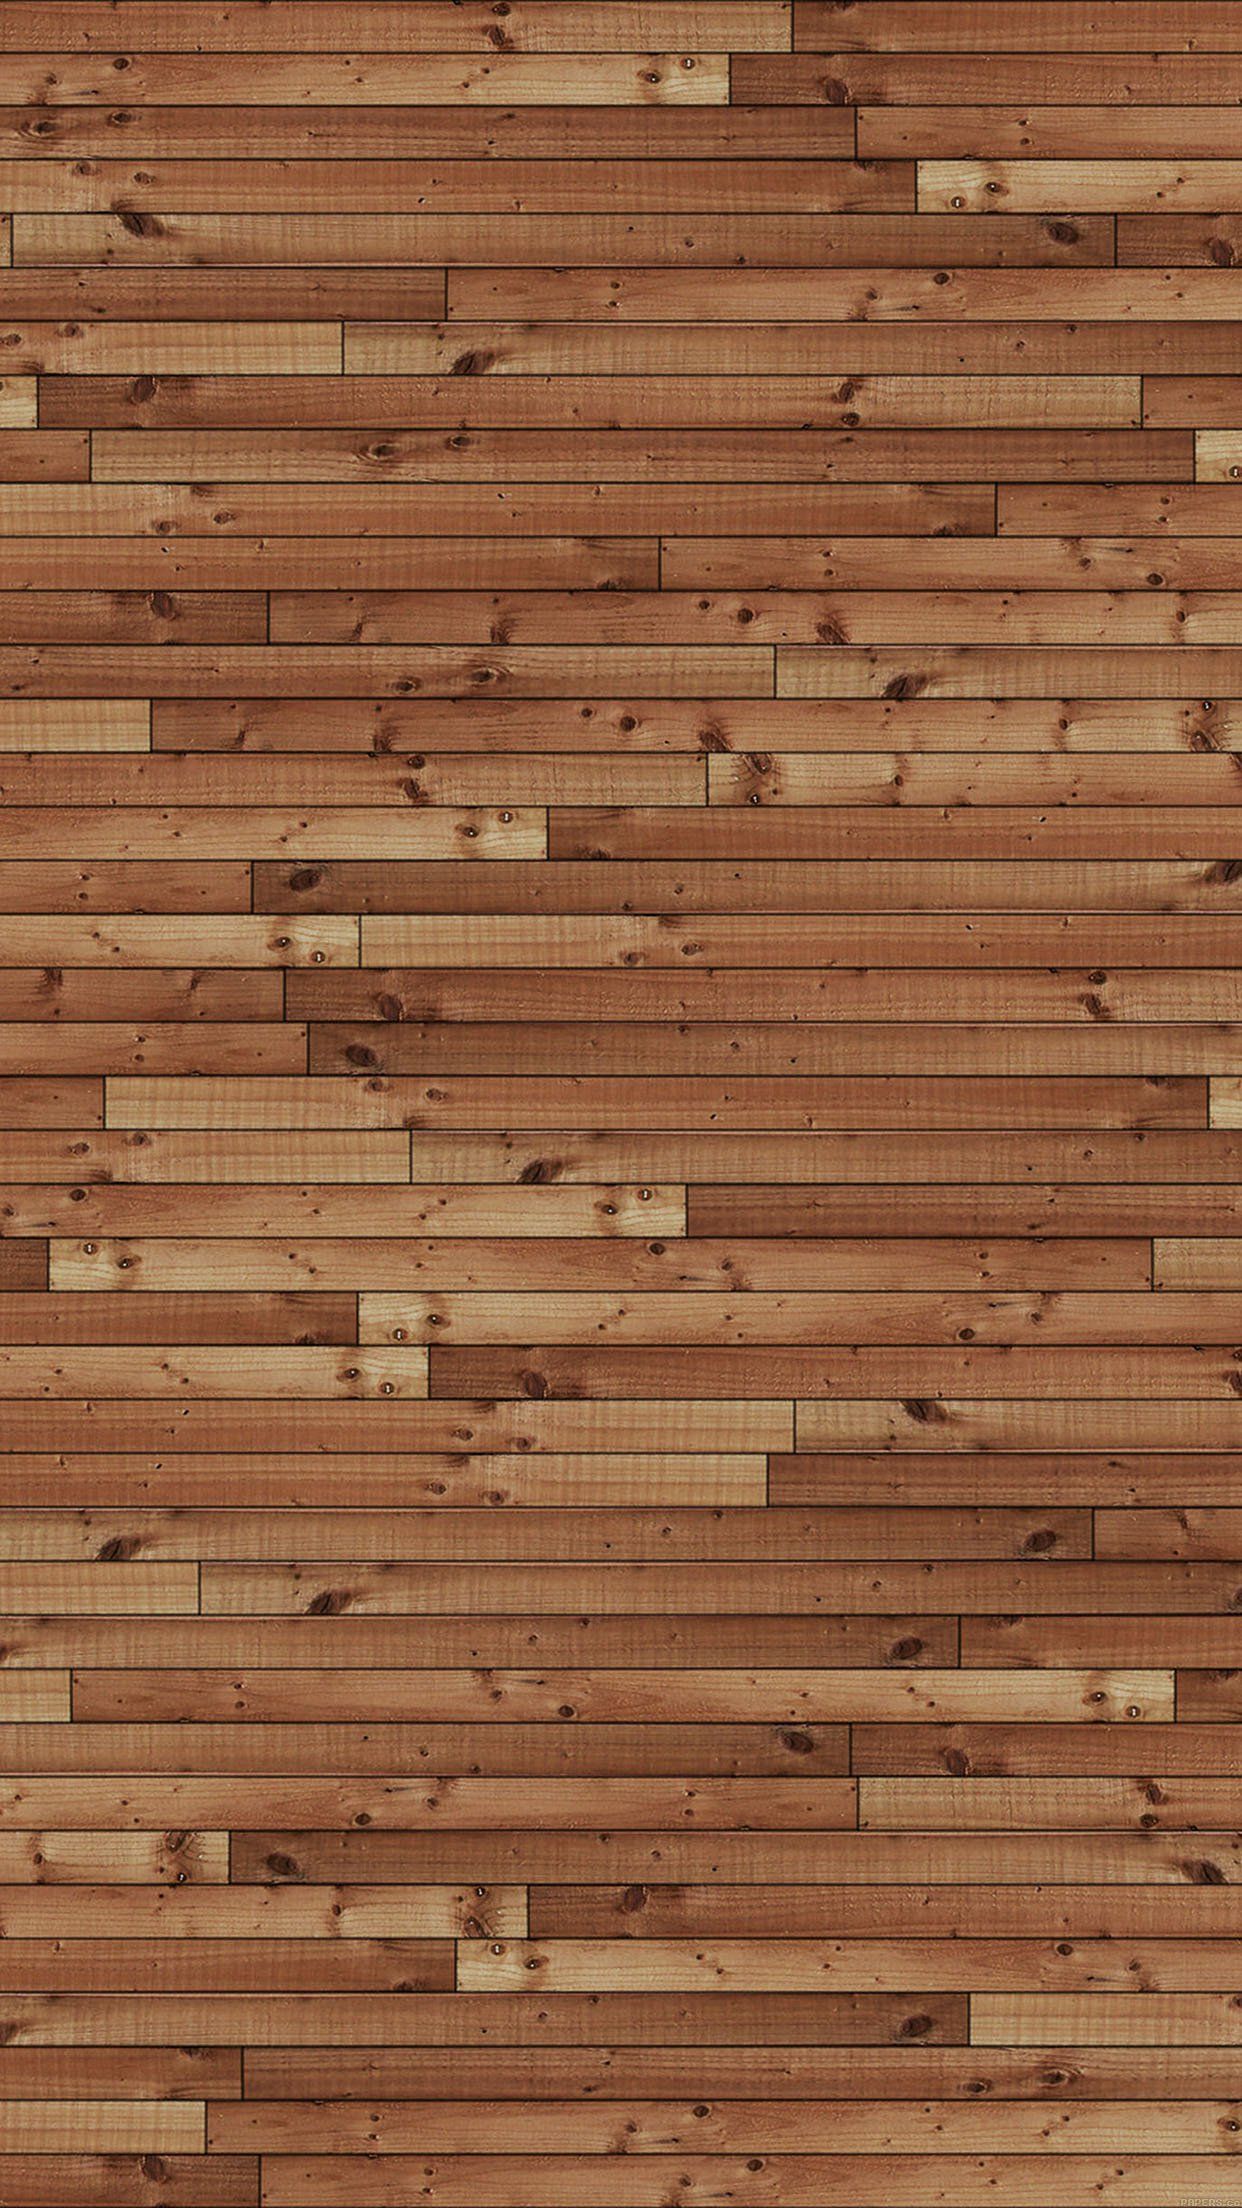 Iphone Wood Wallpapers (más de 28 imágenes)